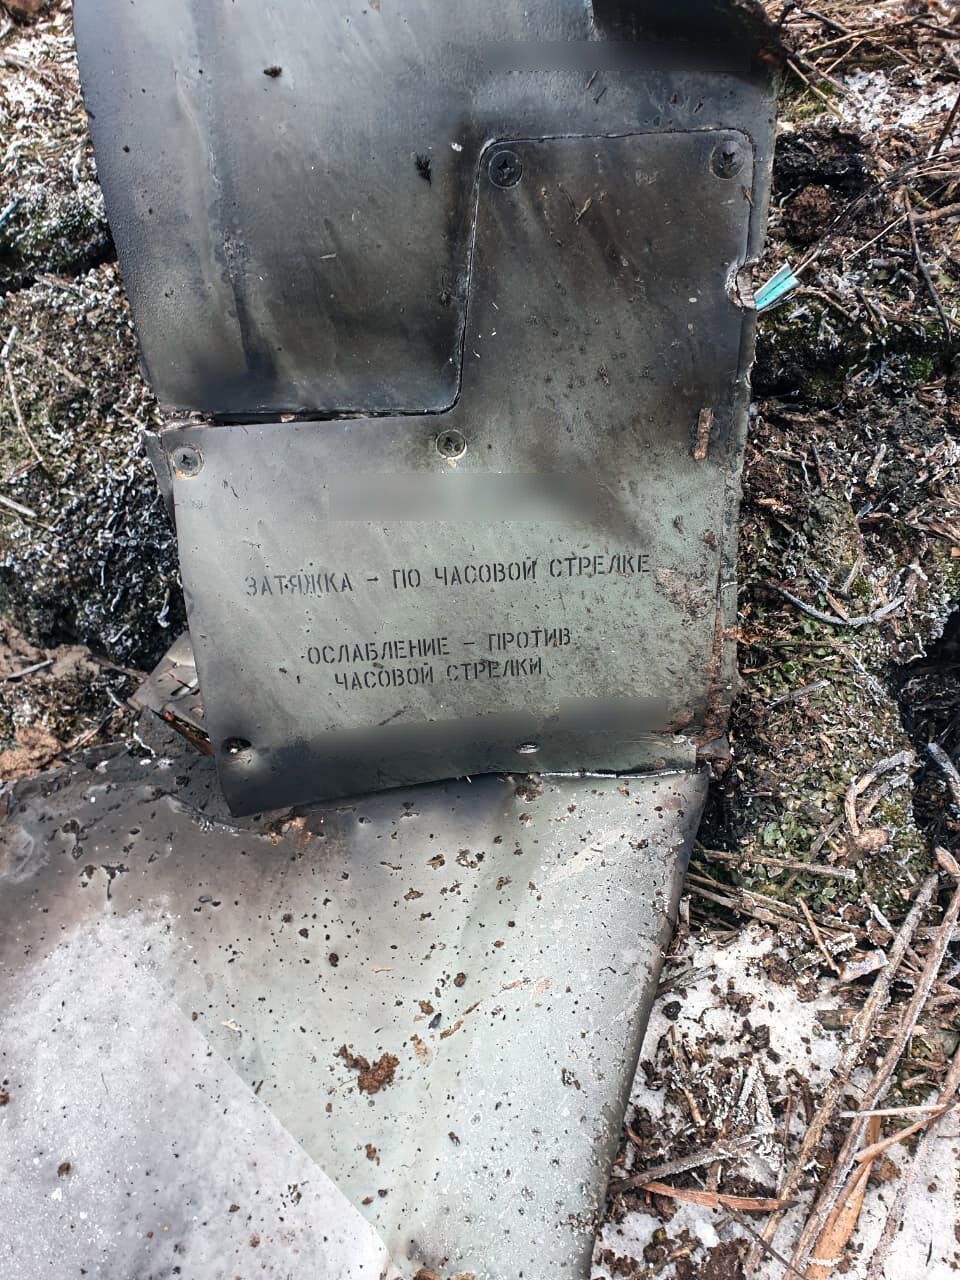 Украинские нацгвардейцы сбили вражескую крылатую ракету Х-101 из стрелкового оружия: фото и впечатляющие подробности